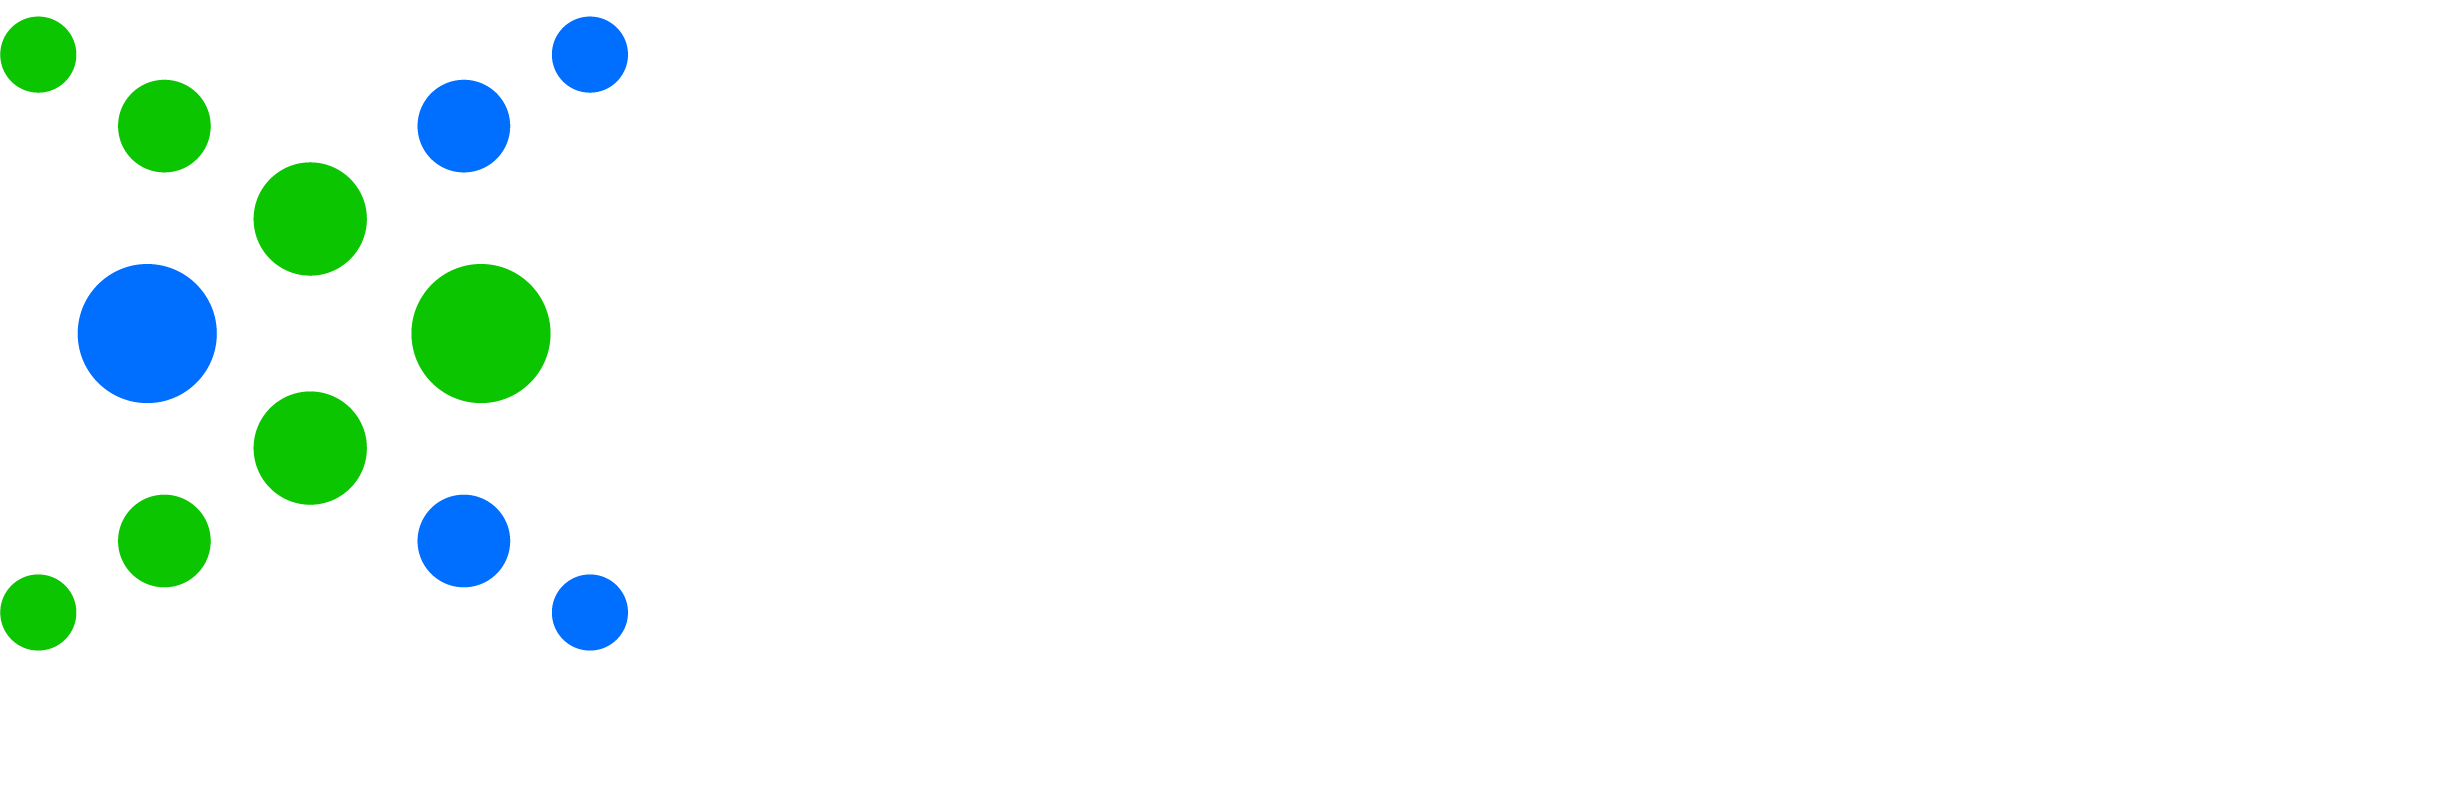 Nacha Consulting